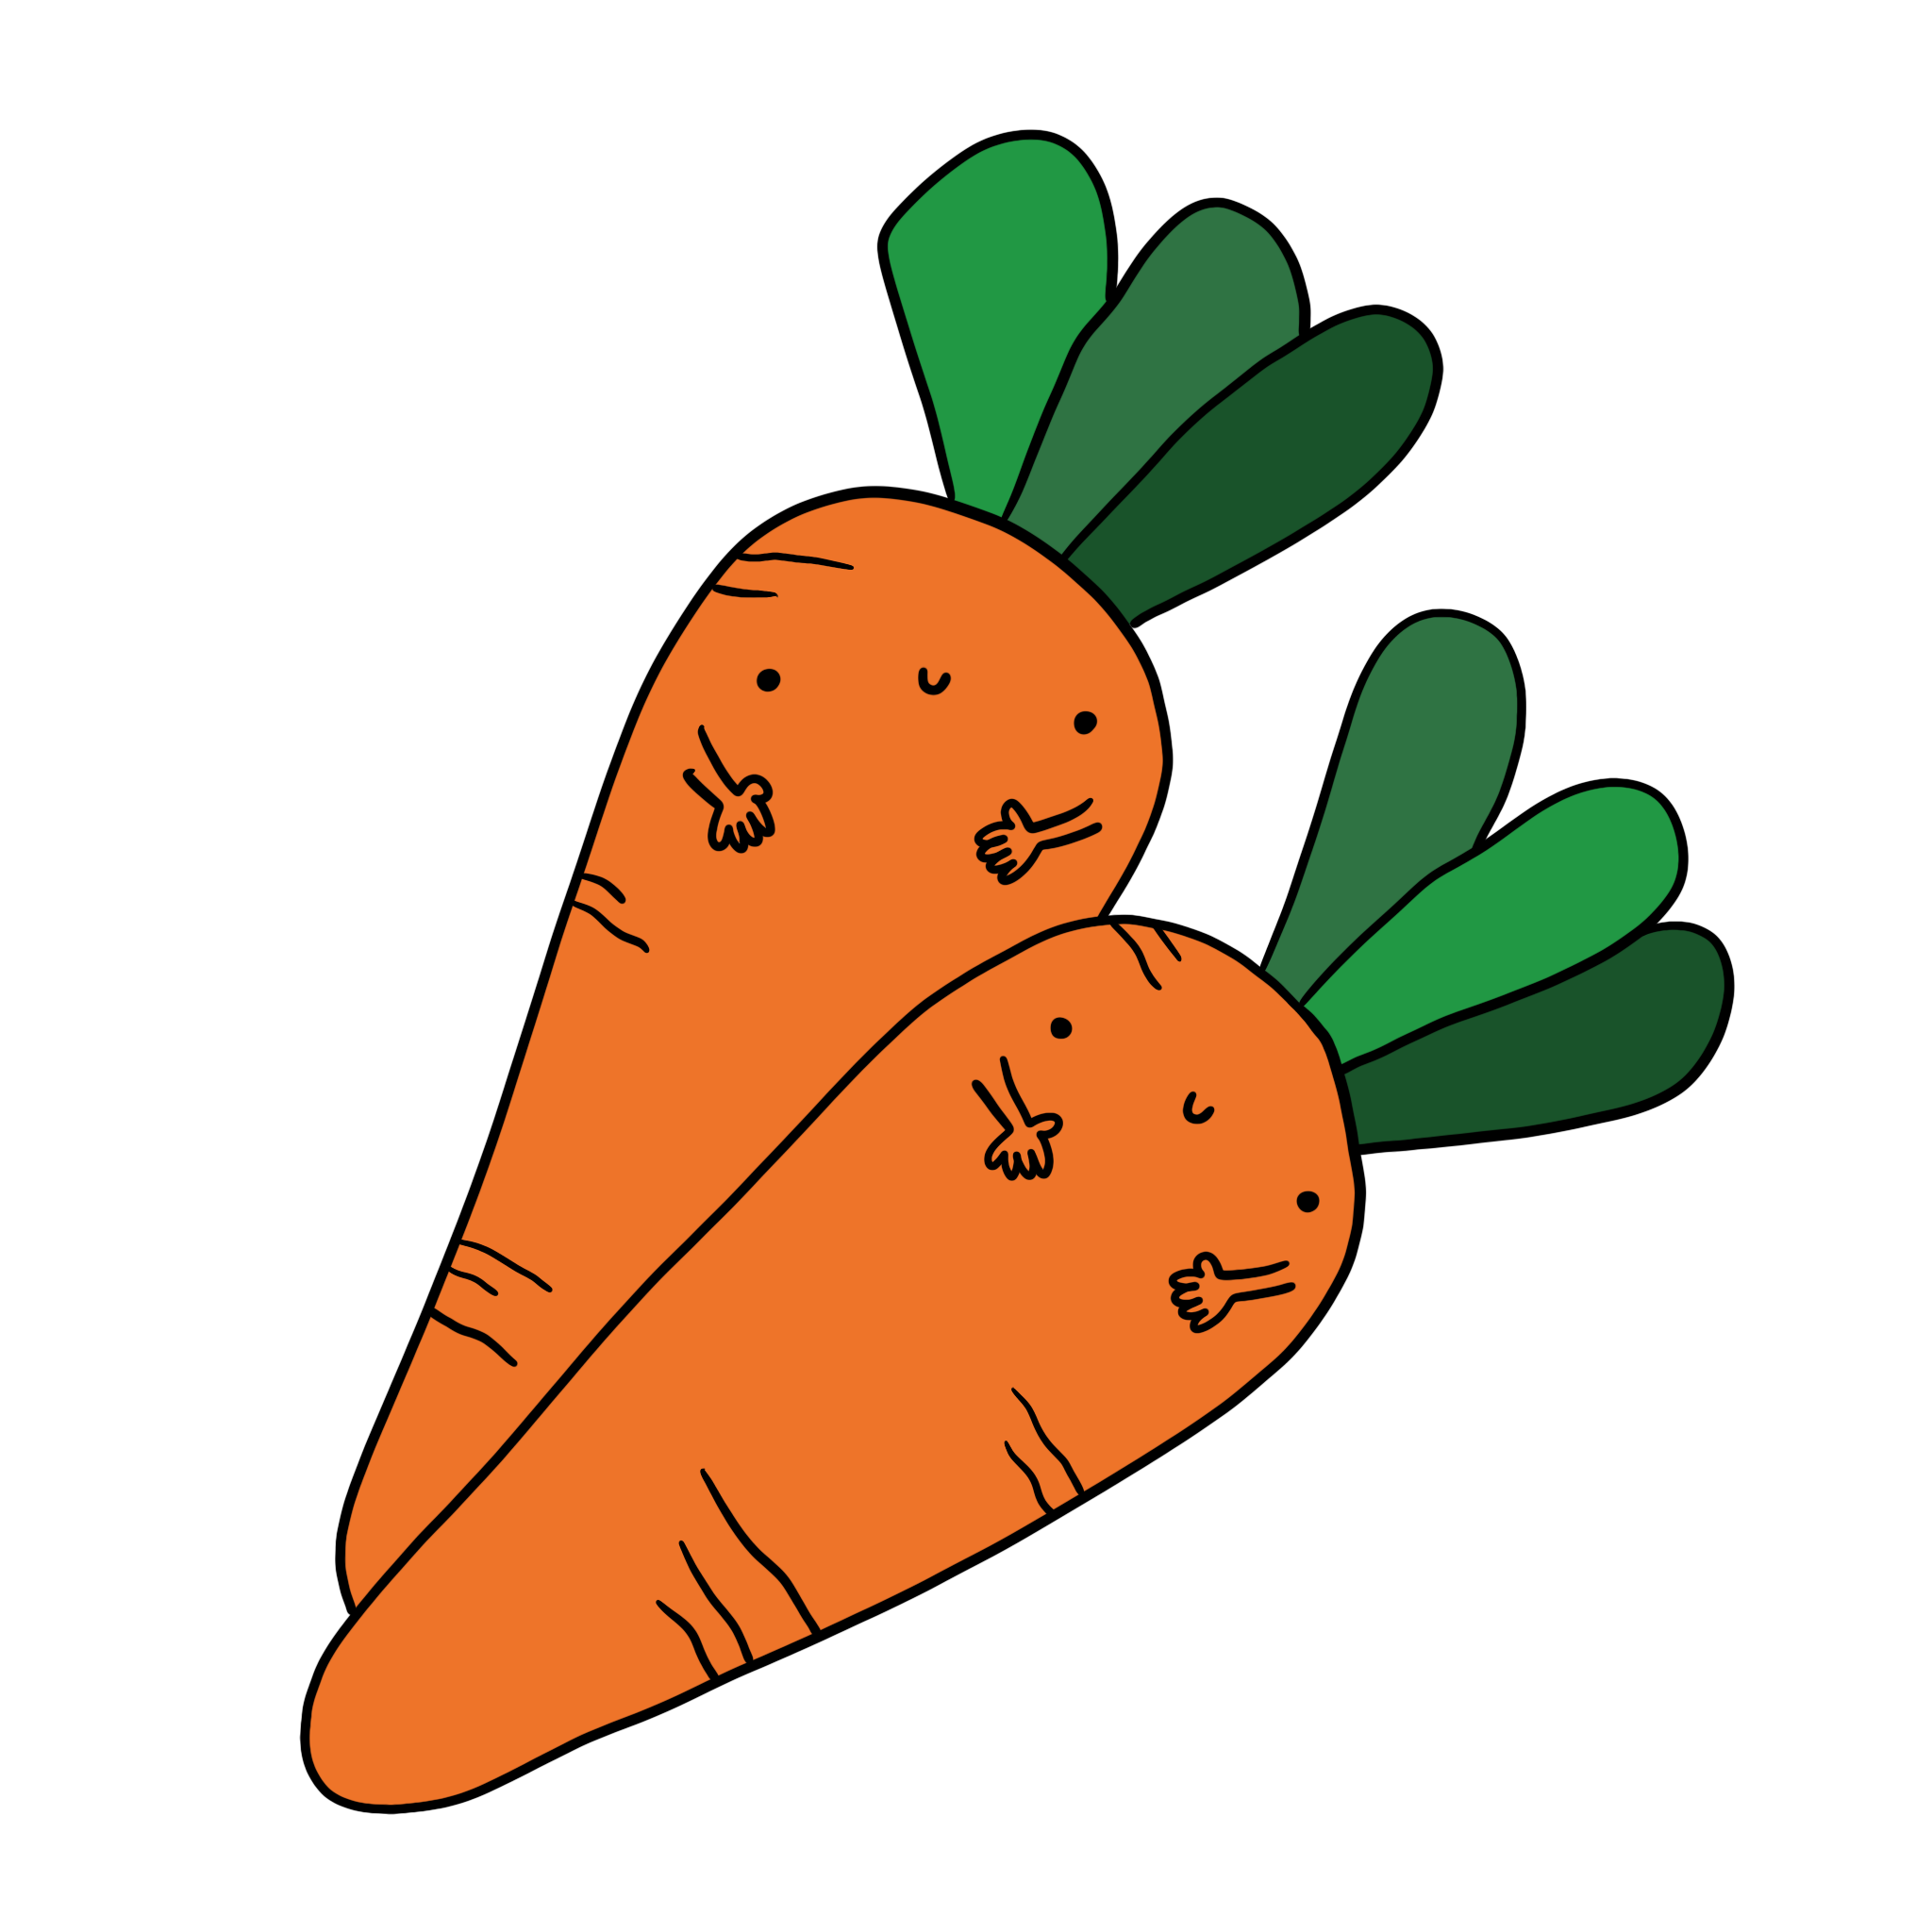 immagini disegni illustrazioni carota